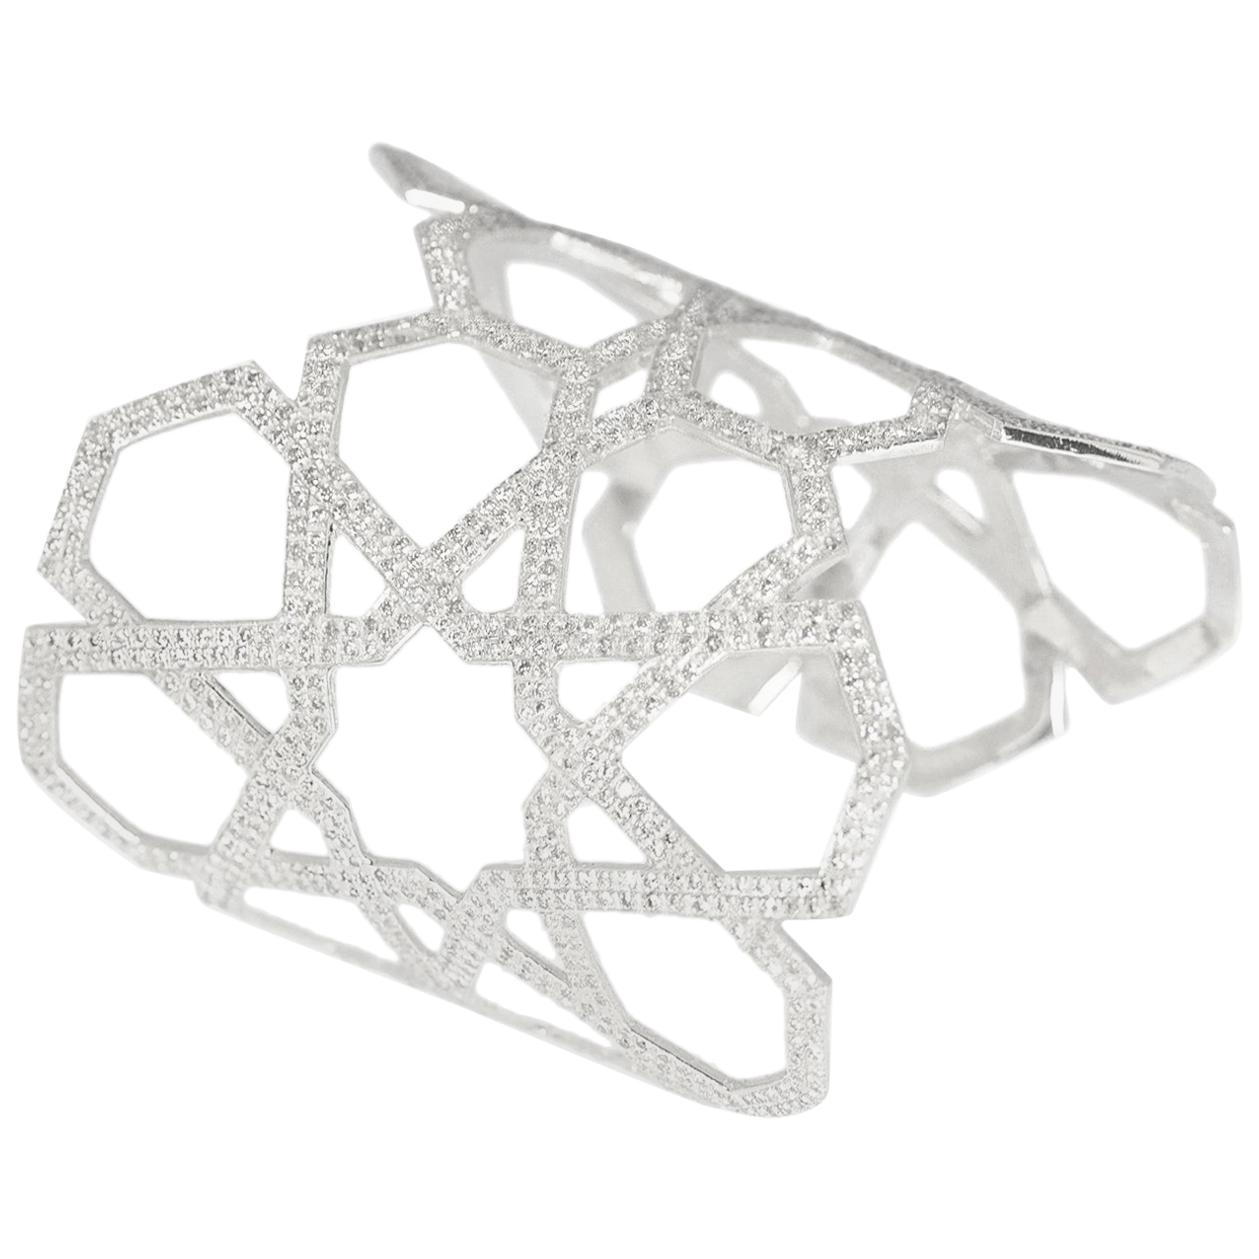 Ralph Masri Arabesque Deco Style Diamond Cuff Bracelet